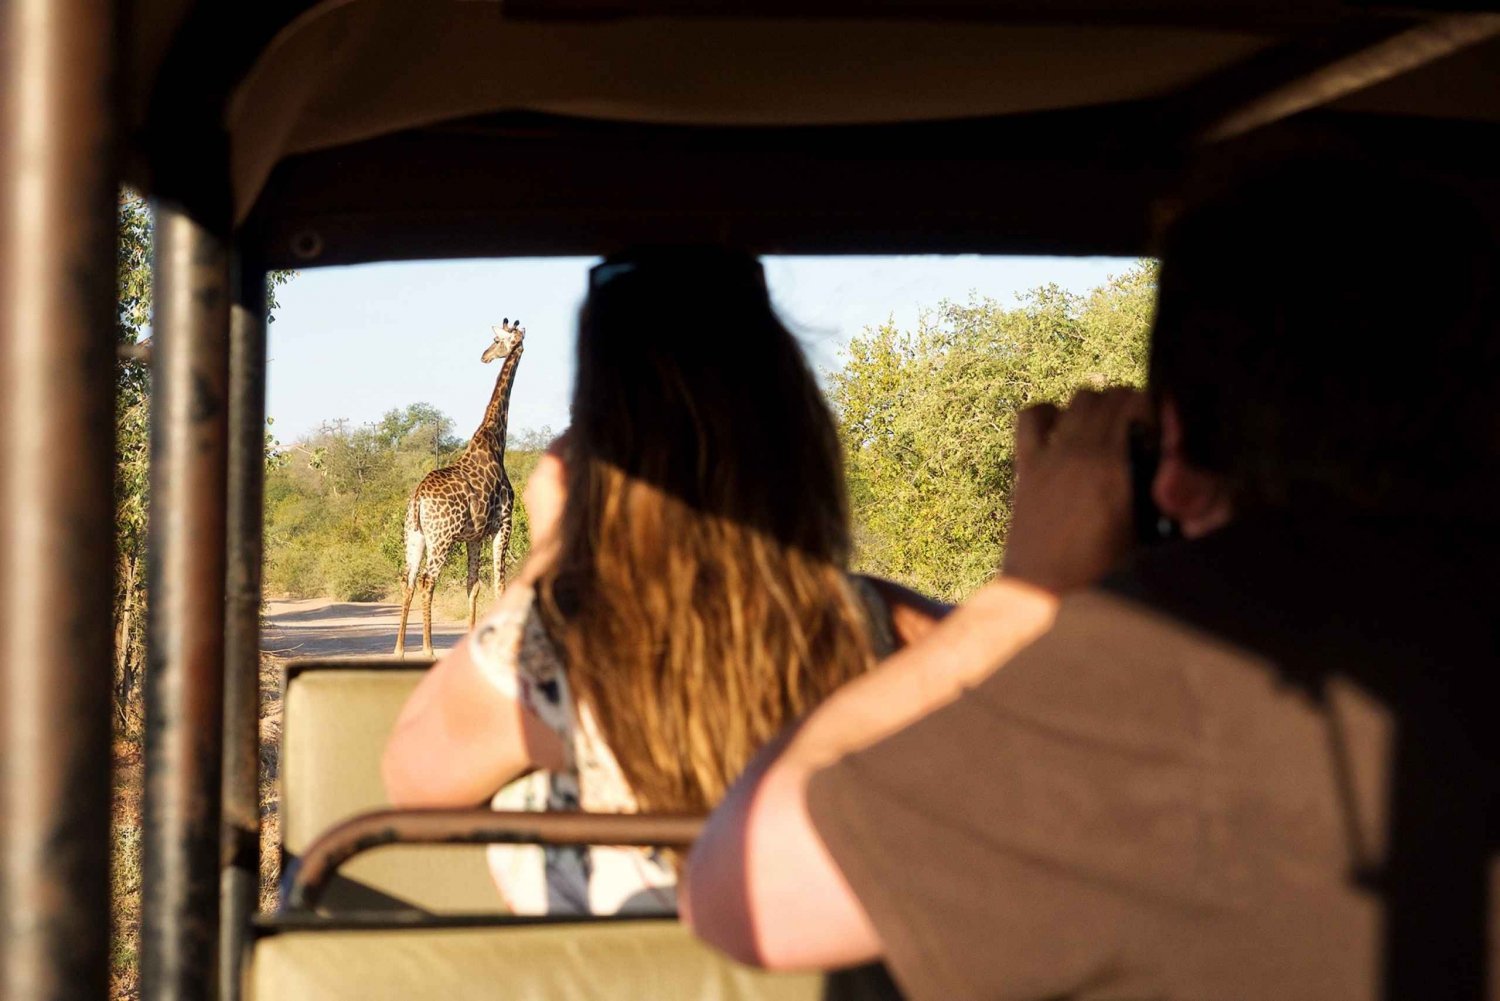 Desde Johannesburgo: Safari económico de 3 días al Parque Nacional Kruger